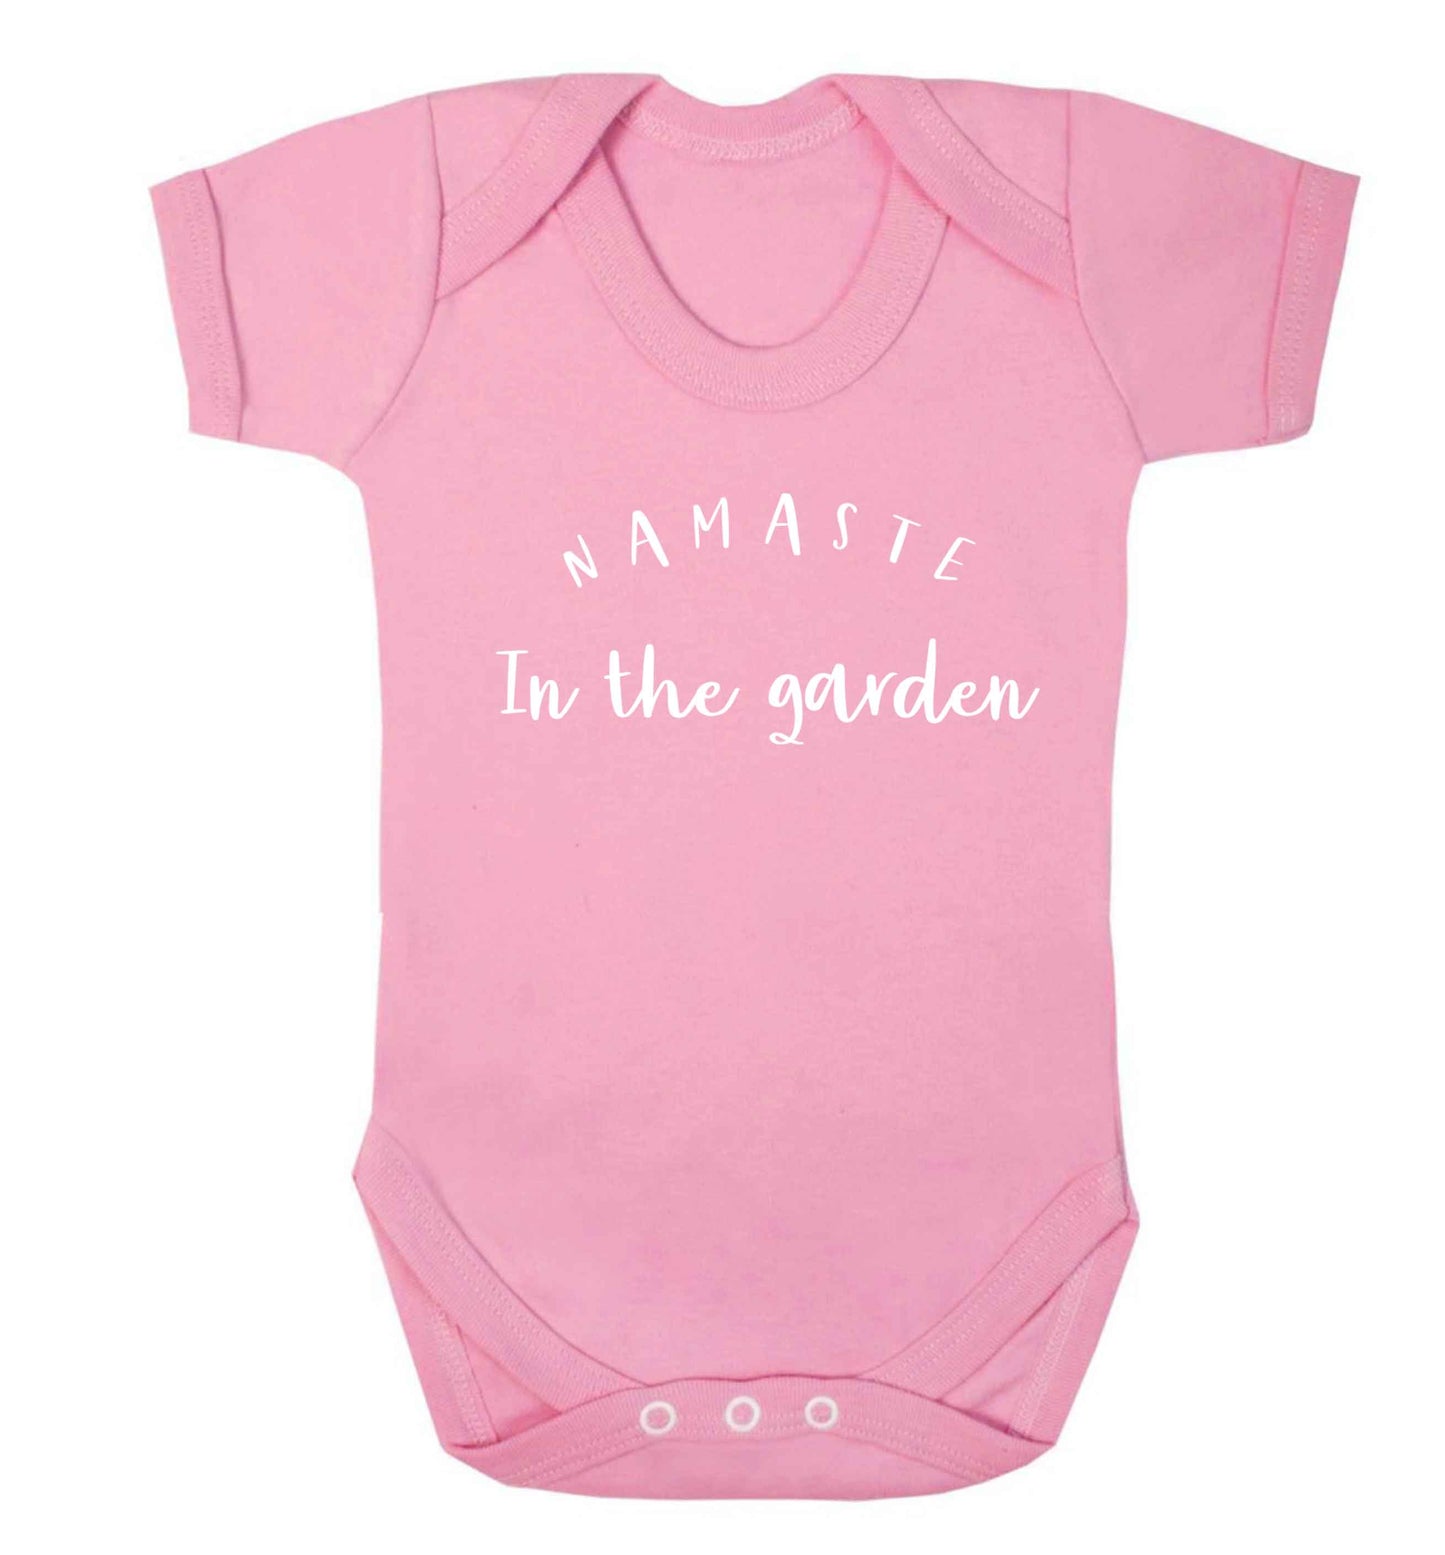 Namaste in the garden Baby Vest pale pink 18-24 months